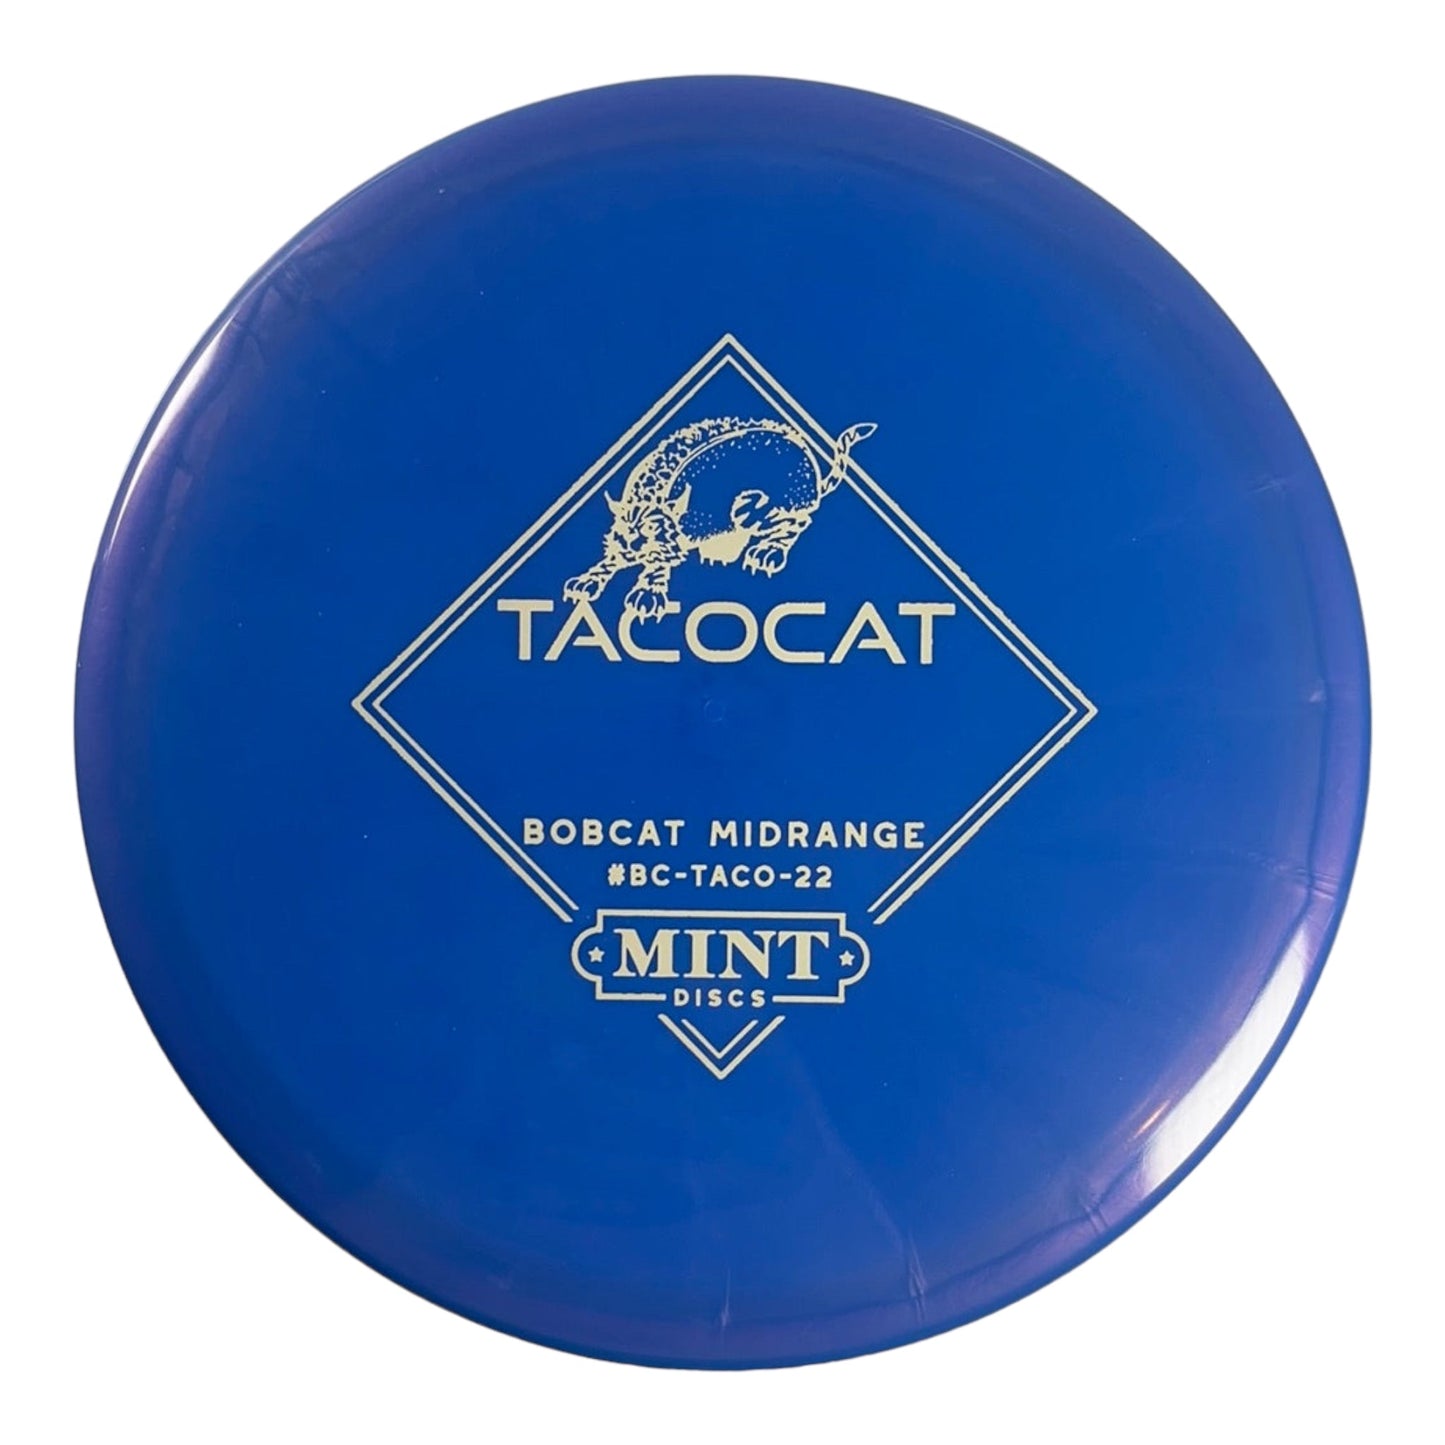 Mint Discs Bobcat | Sublime | Blue/White 175g (Tacocat Edition) Disc Golf